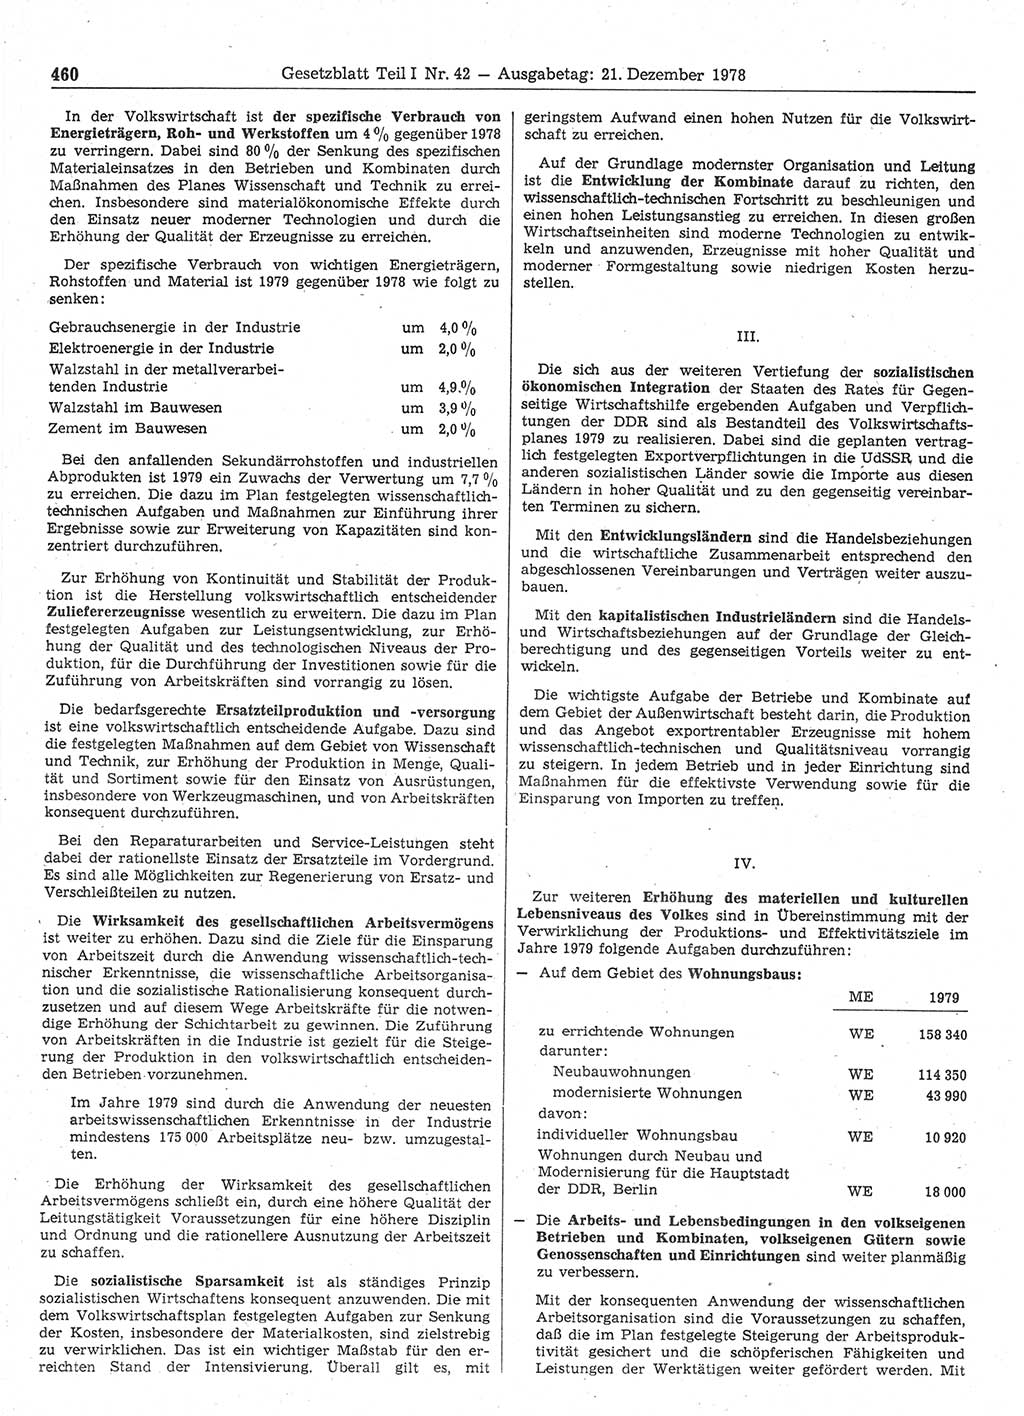 Gesetzblatt (GBl.) der Deutschen Demokratischen Republik (DDR) Teil Ⅰ 1978, Seite 460 (GBl. DDR Ⅰ 1978, S. 460)